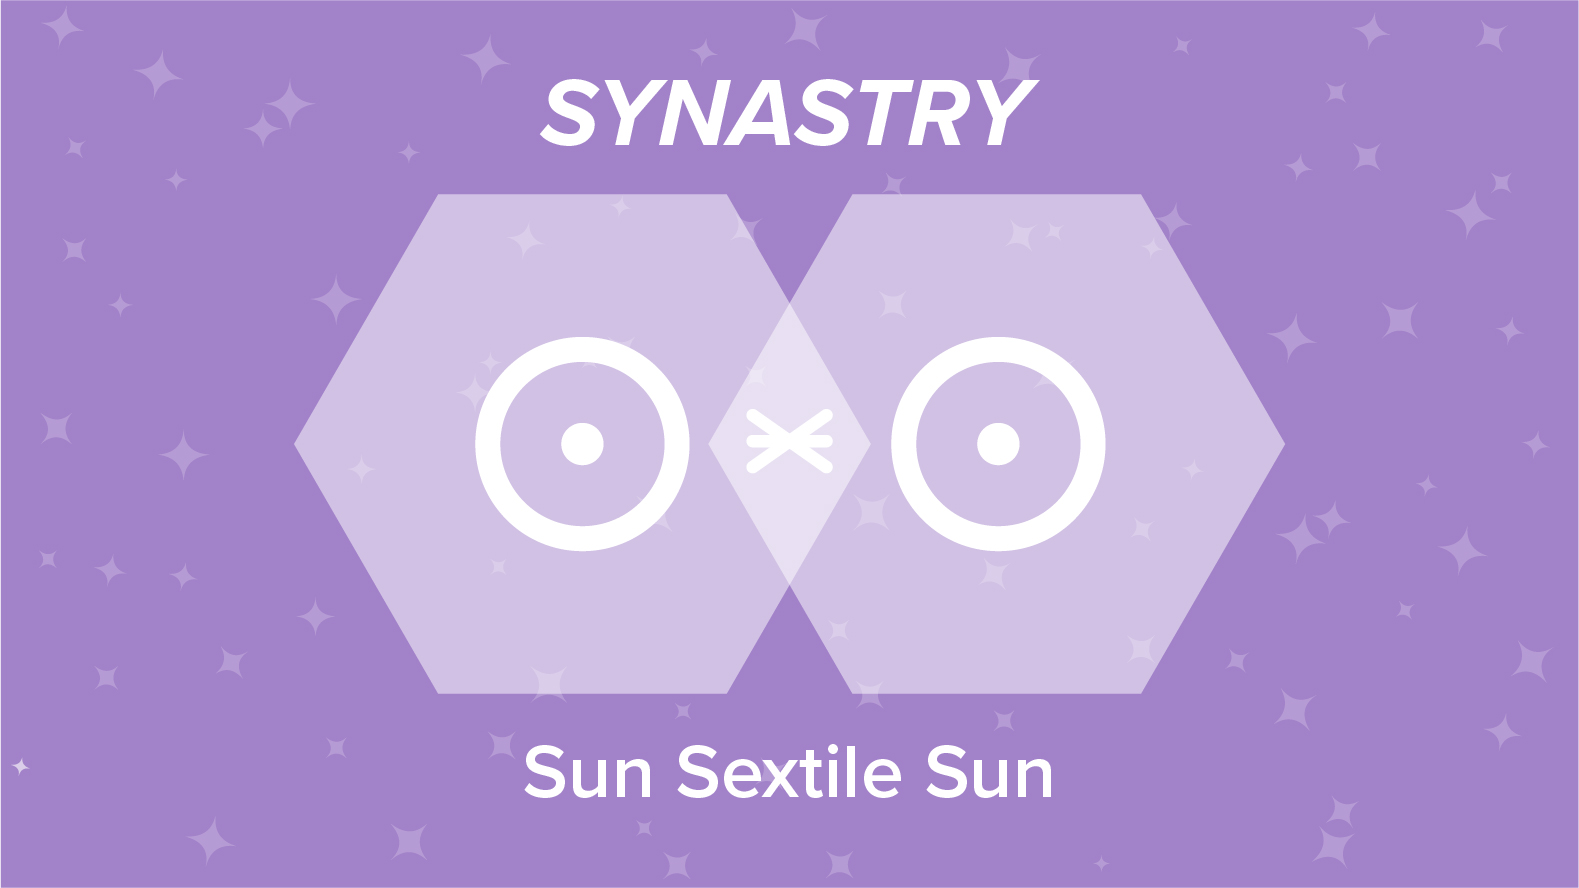 Sun Sextile Sun Synastry